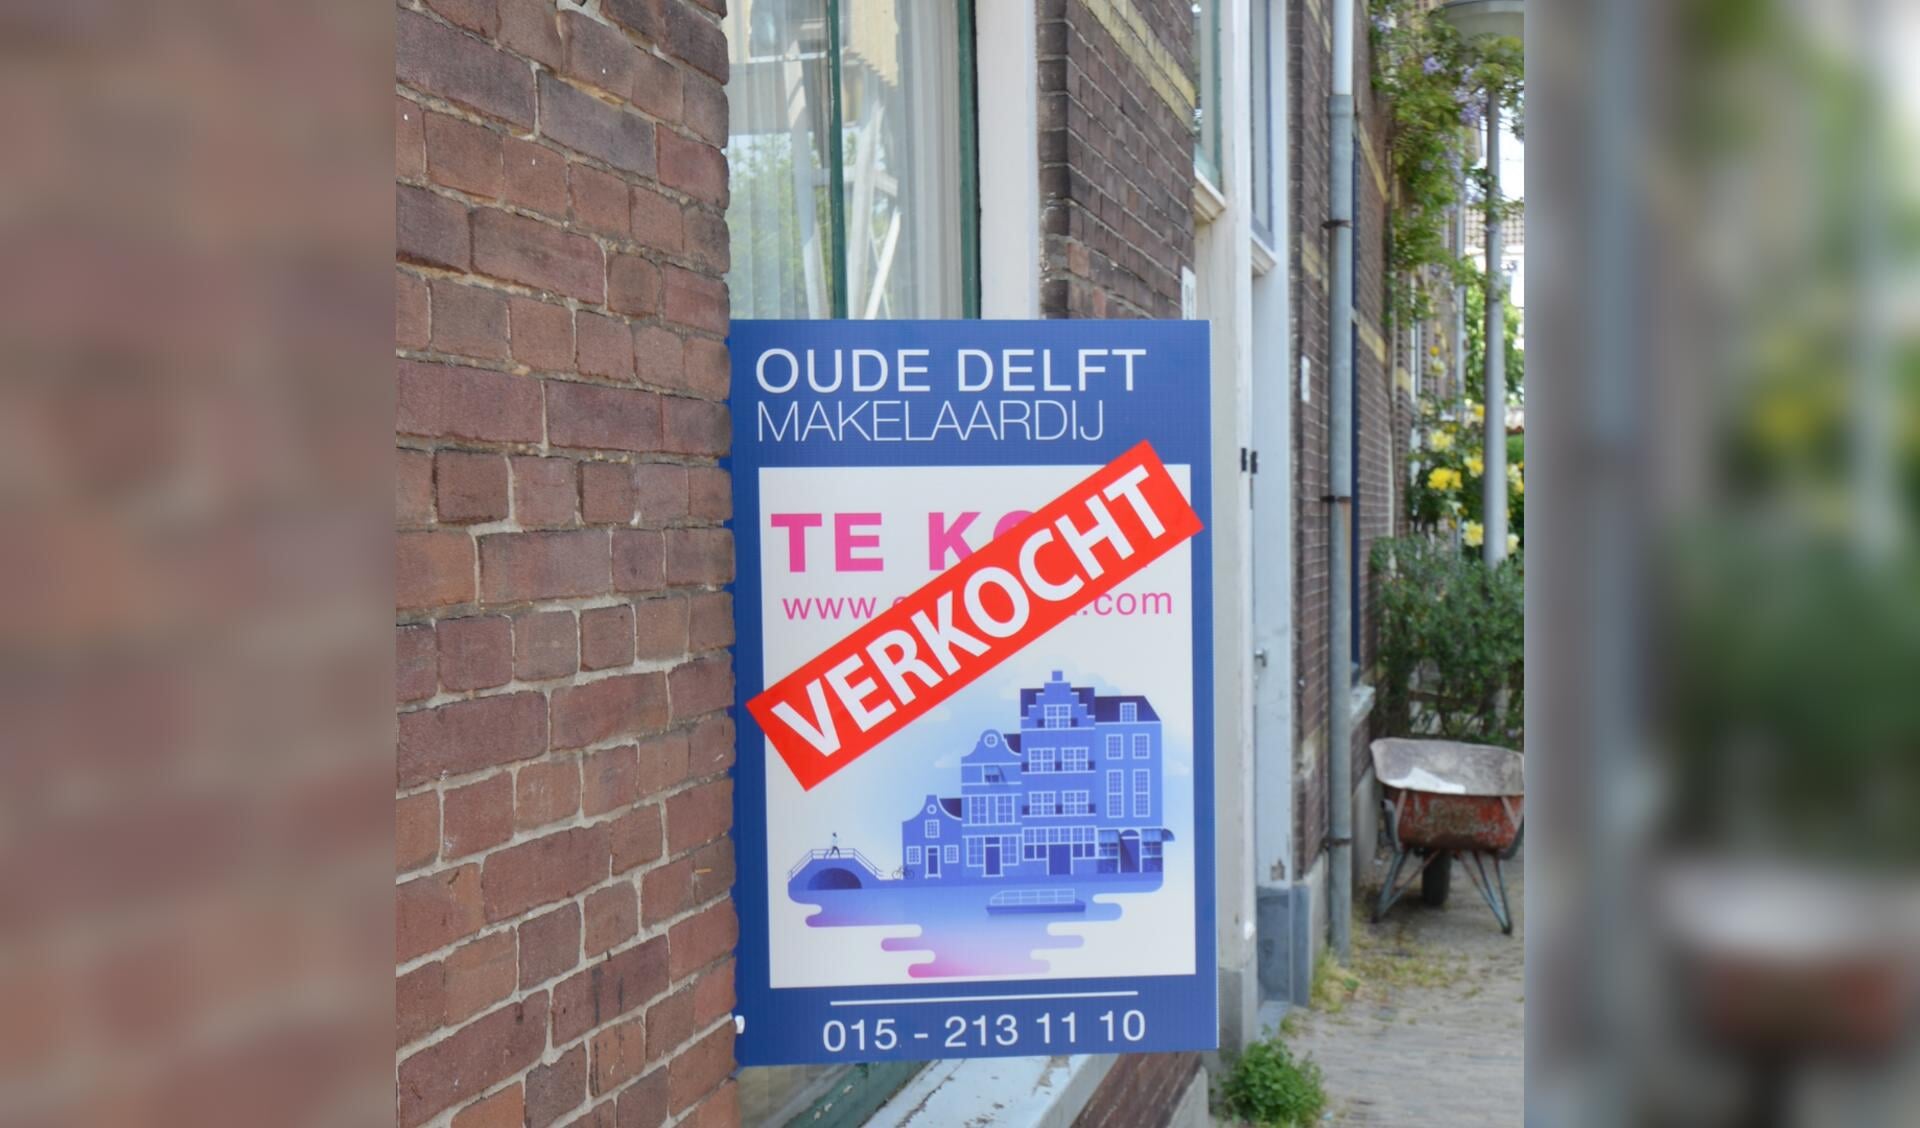 De huidige woning niet verkopen maar verhuren? Oude Delft Makelaardij kan er alles over vertellen!